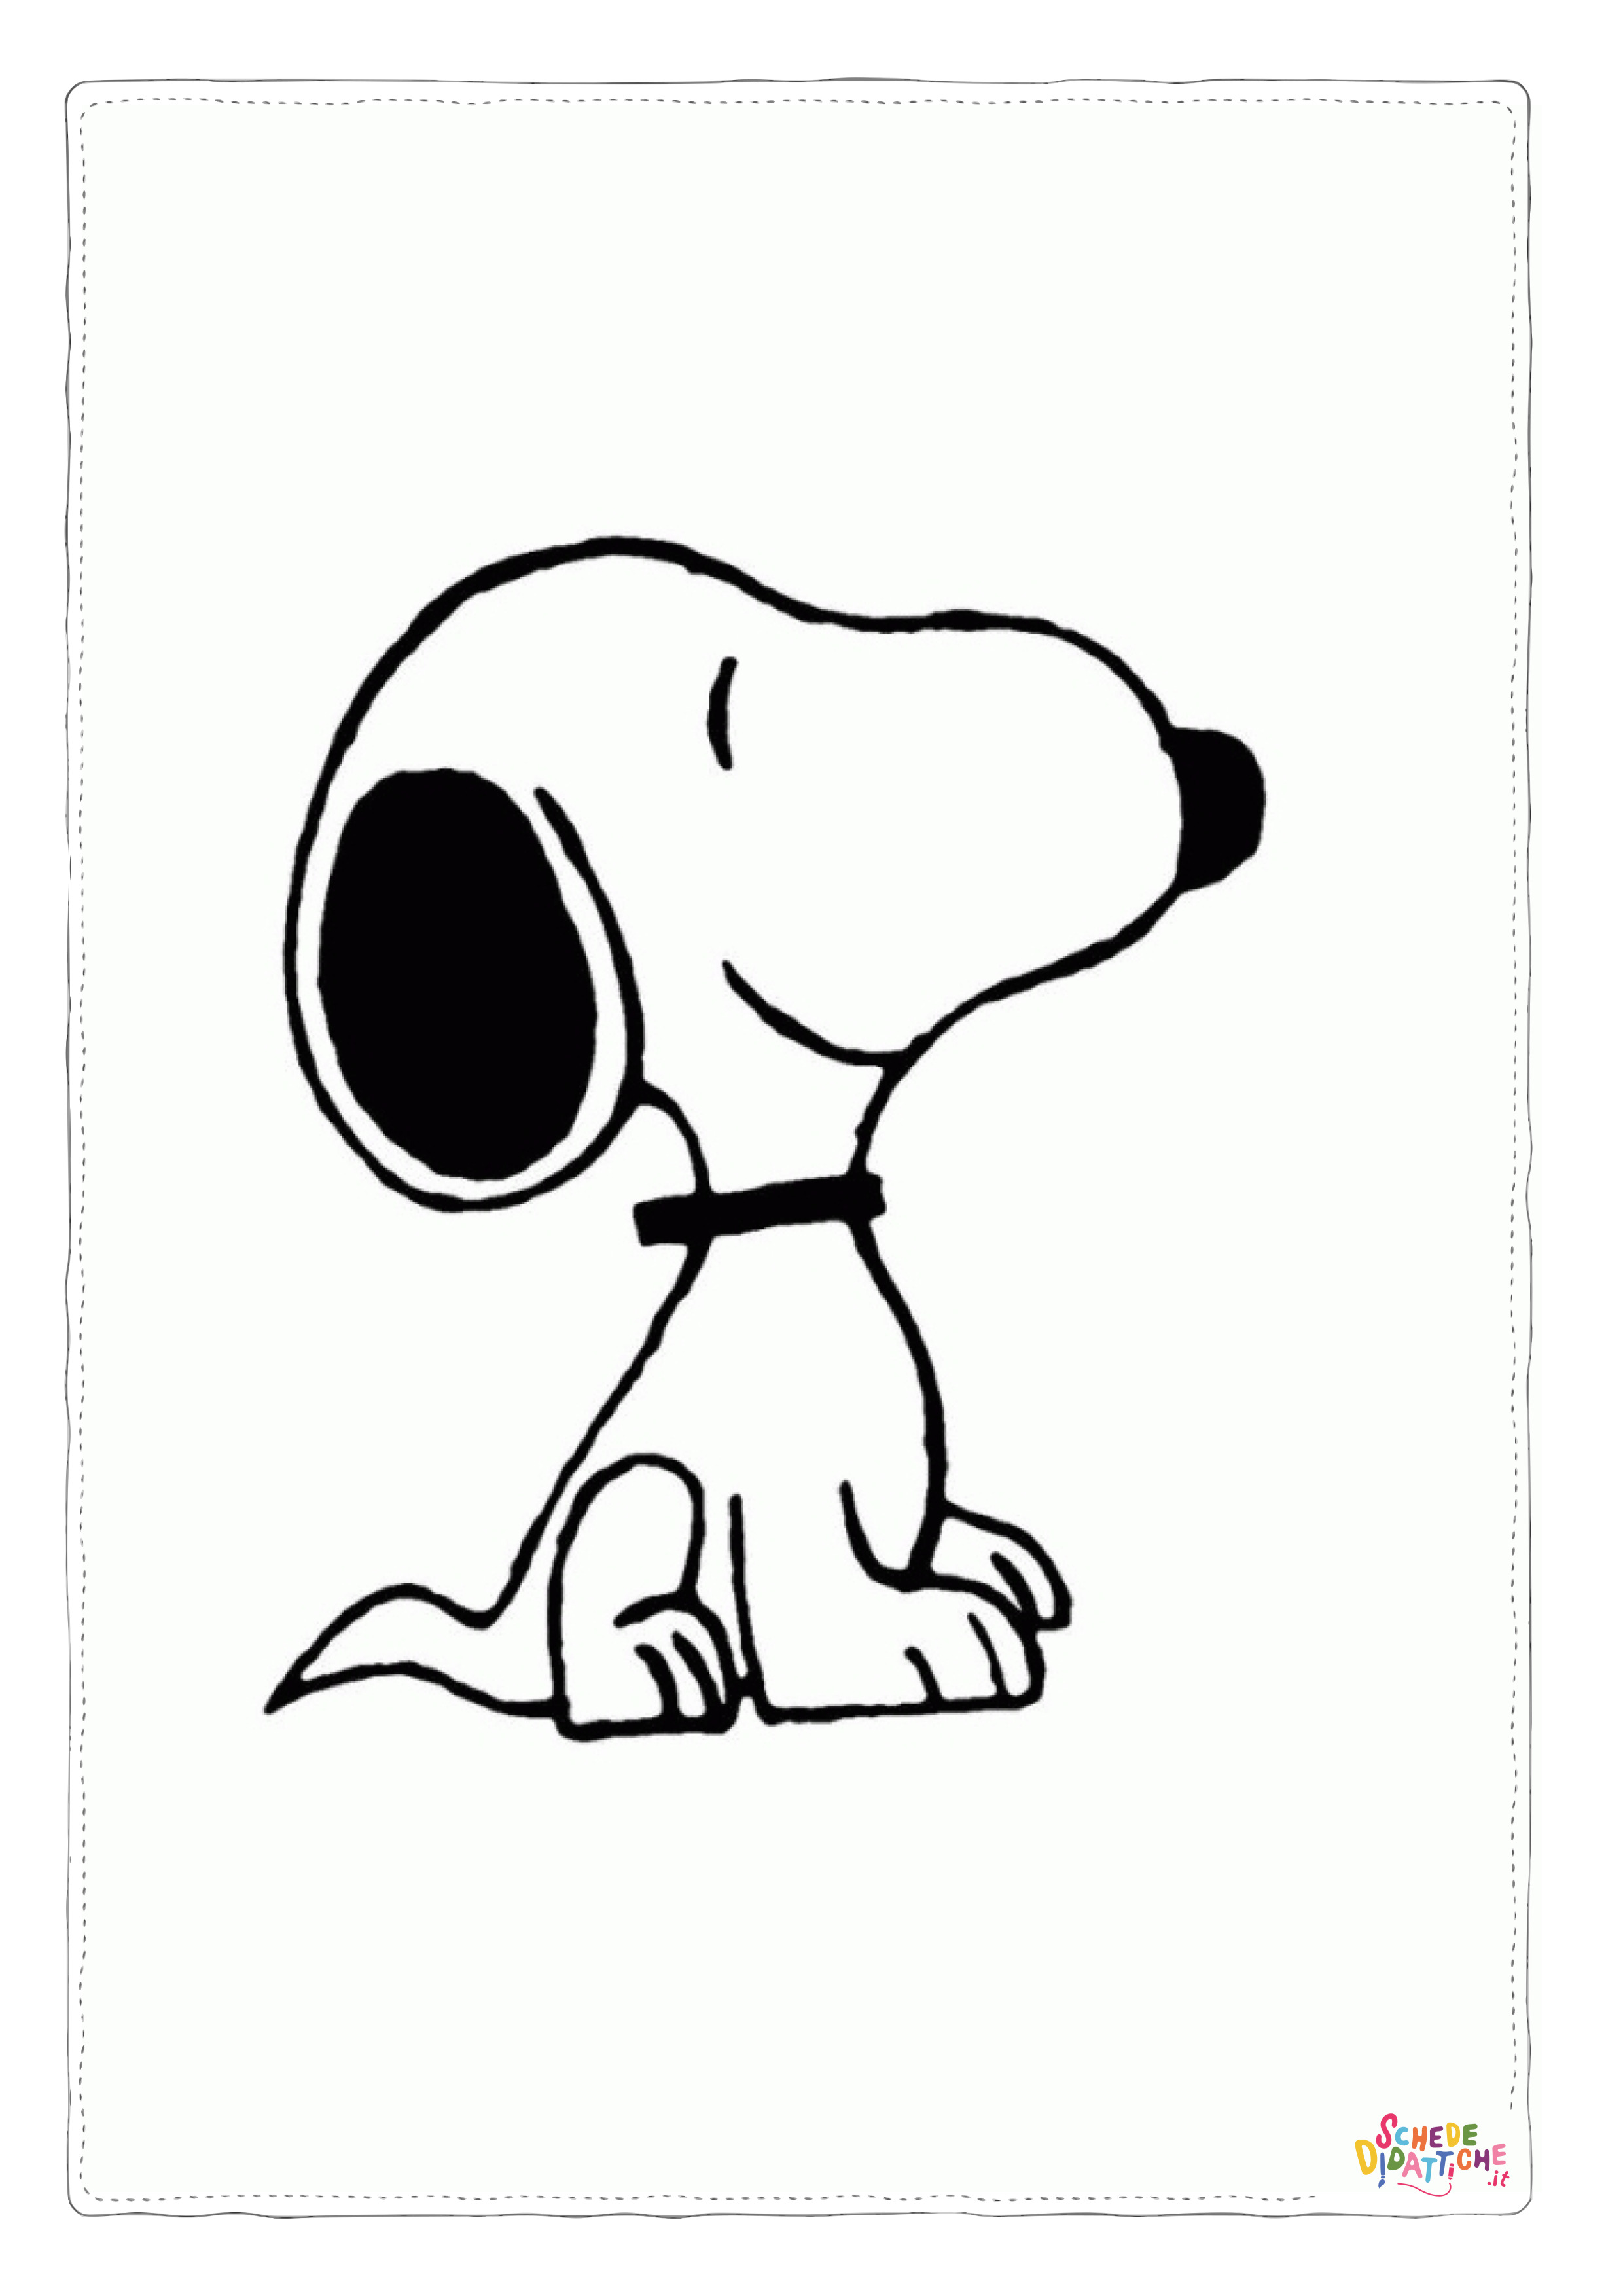 Disegno di Snoopy da stampare e colorare 3